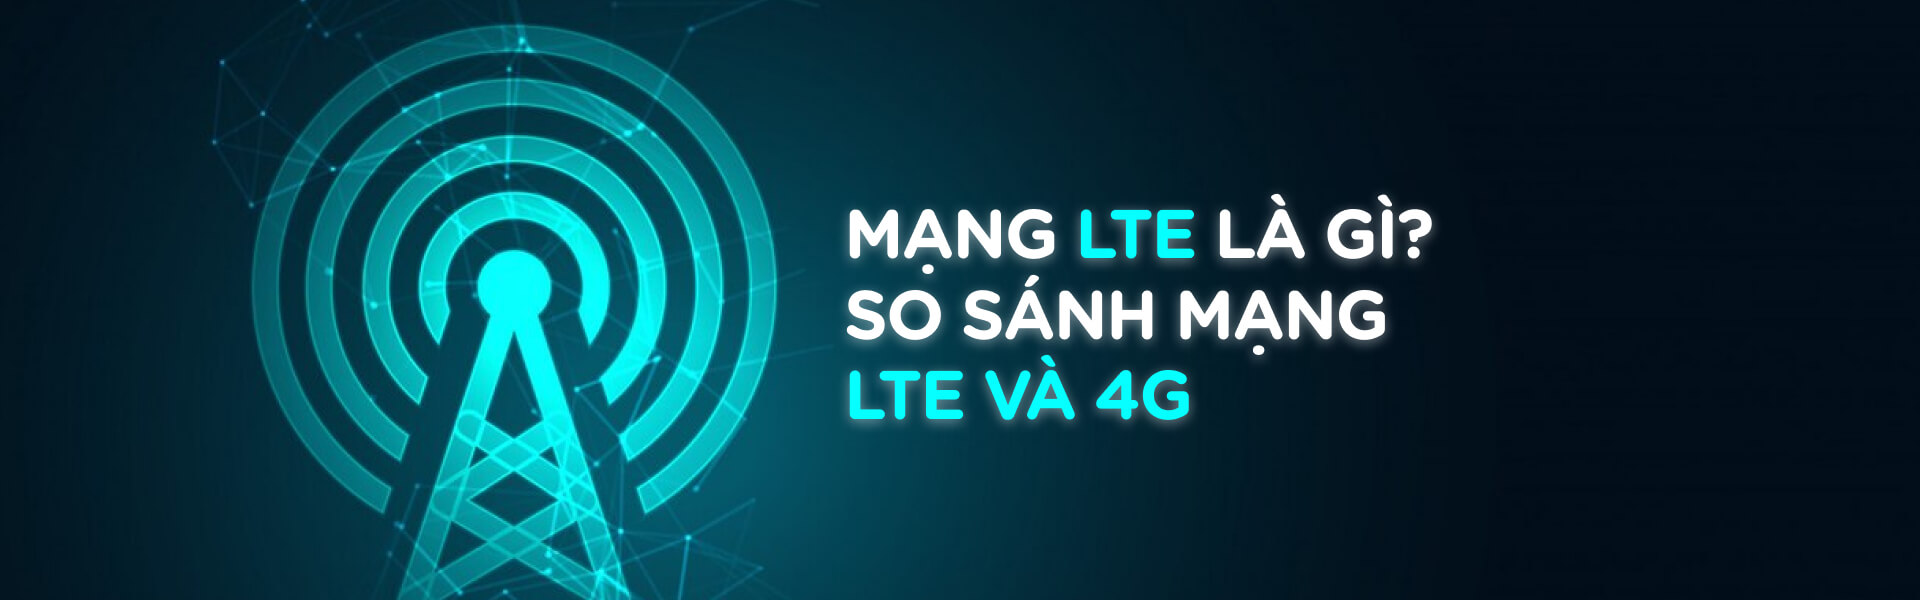 Mạng LTE là gì? So sánh mạng LTE và 4G